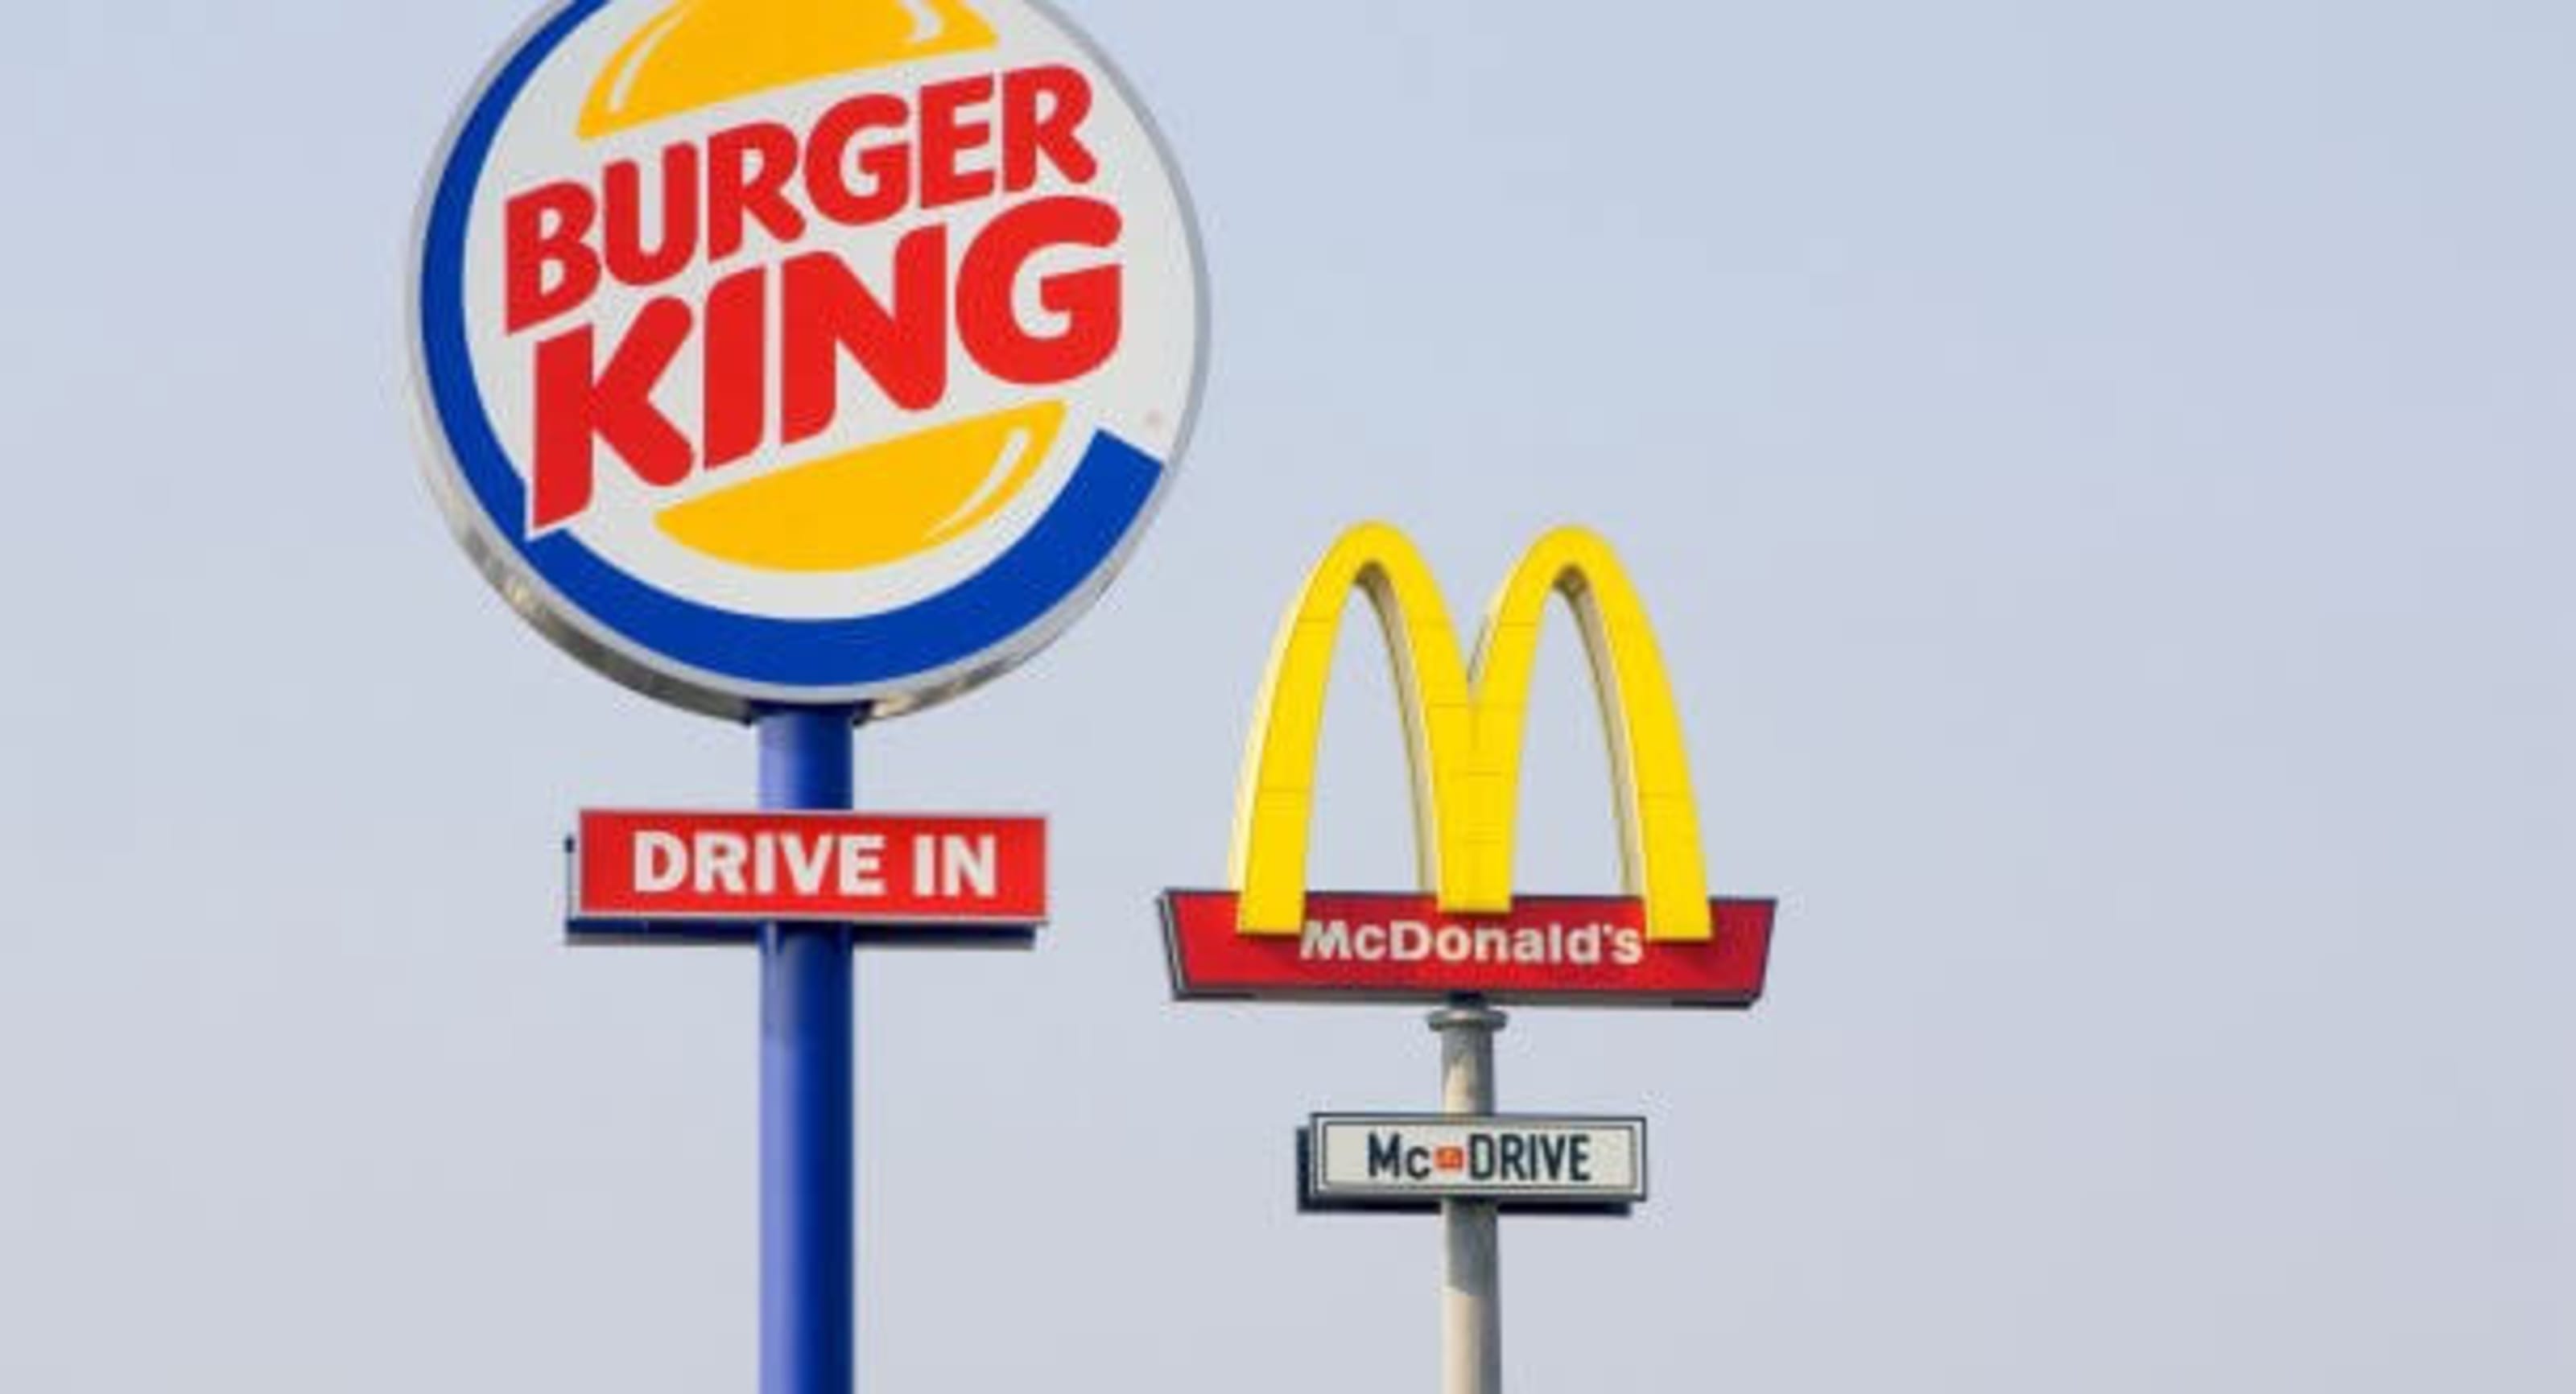 McDonalds next to a Burger King